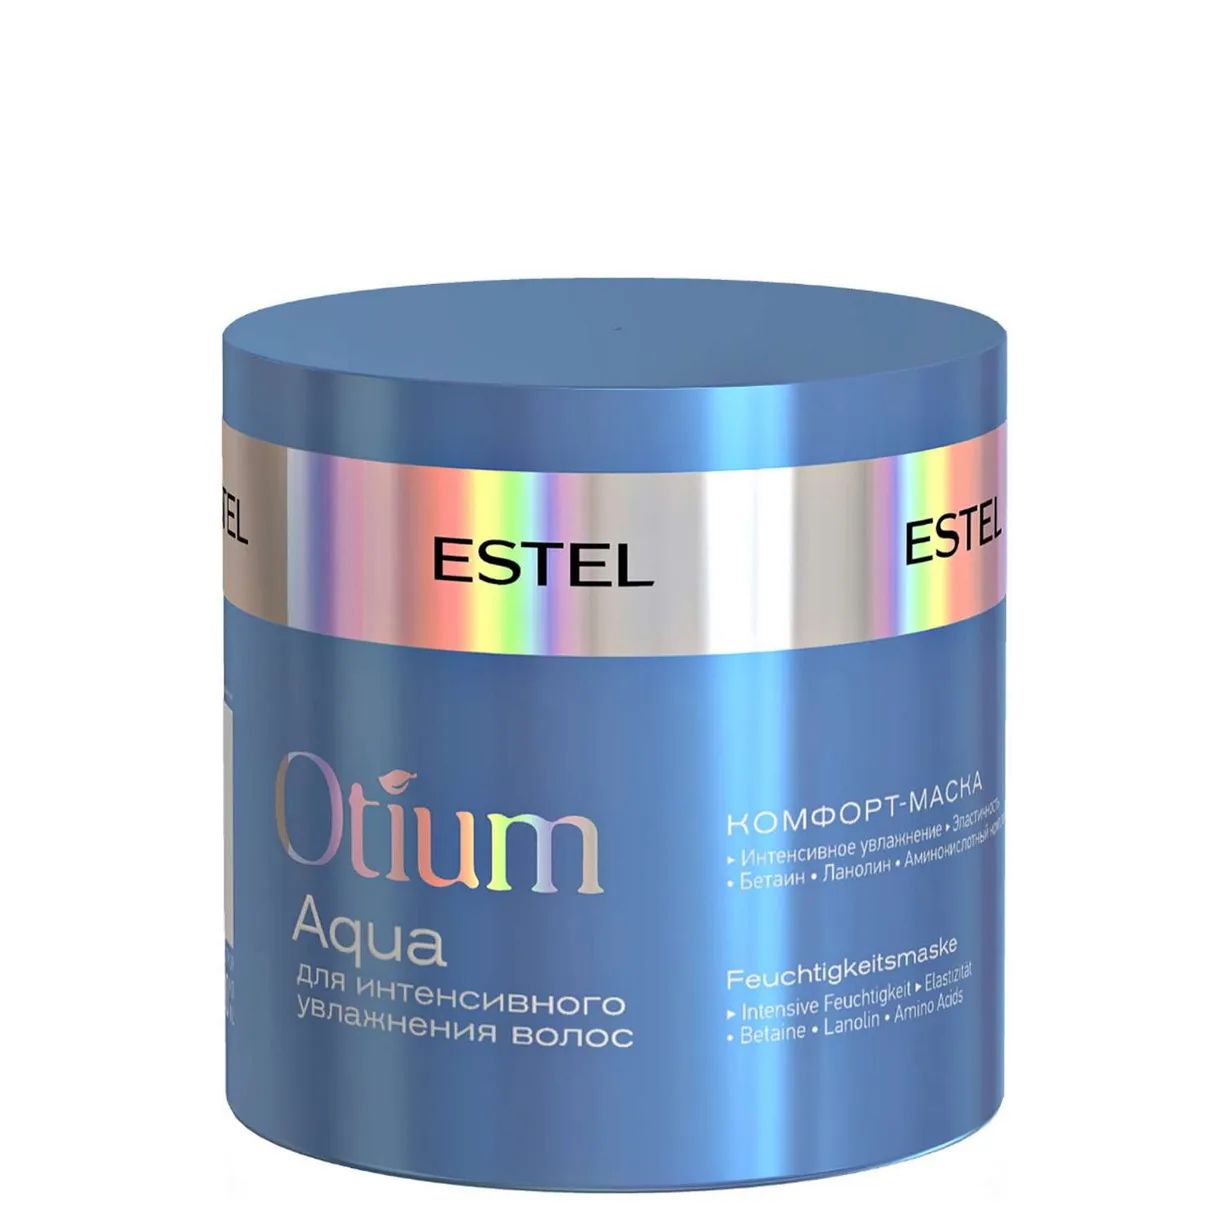 Маска для волос Estel Professional Otium Aqua 300 мл estel подарочный набор полезное питание для волос крем шампунь 250 мл спрей 200 мл маска йогурт 300 мл